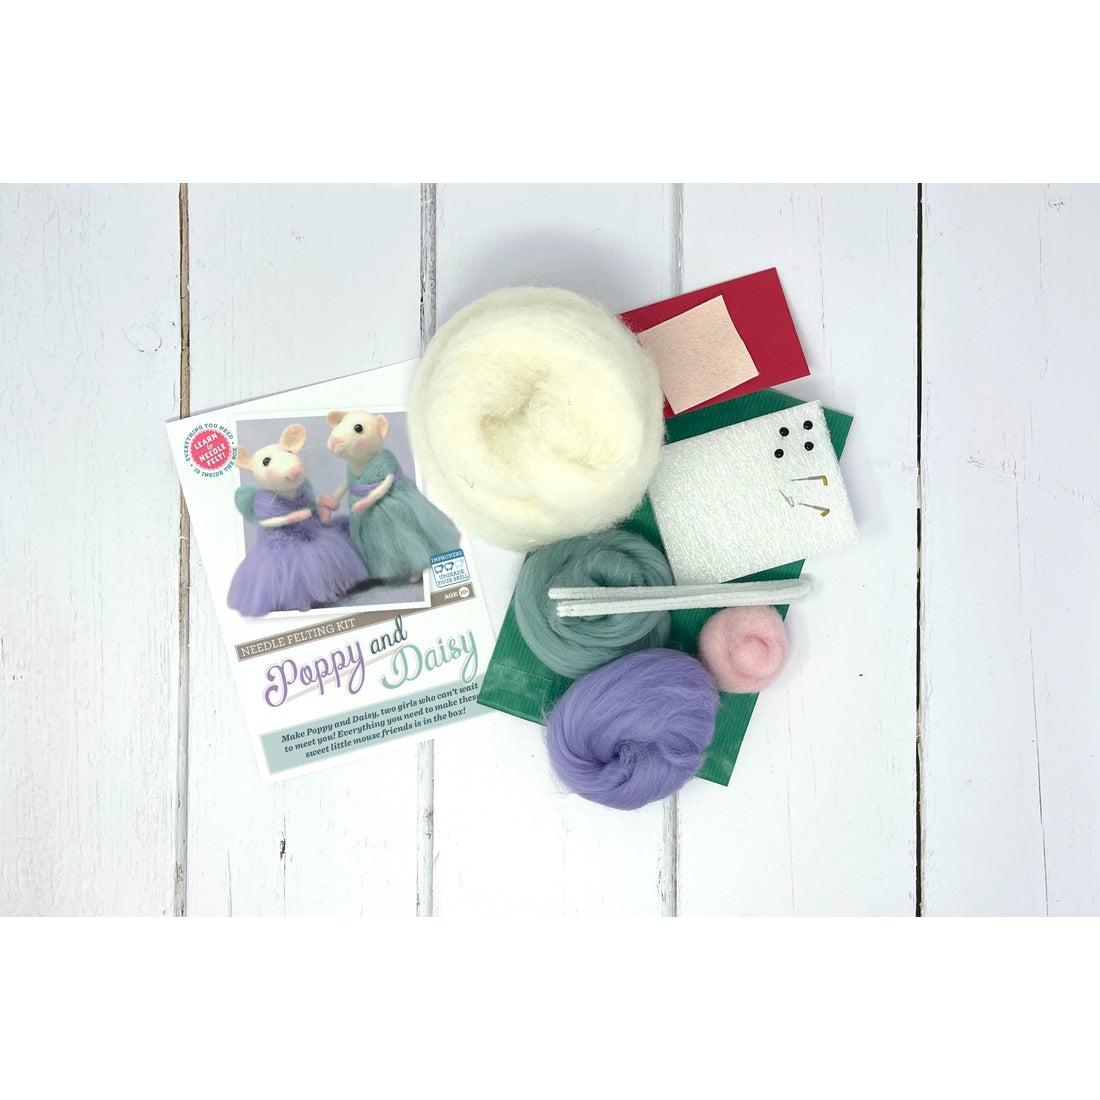 Poppy & Daisy Mice Needle Felting Kit - The Crafty Kit Company